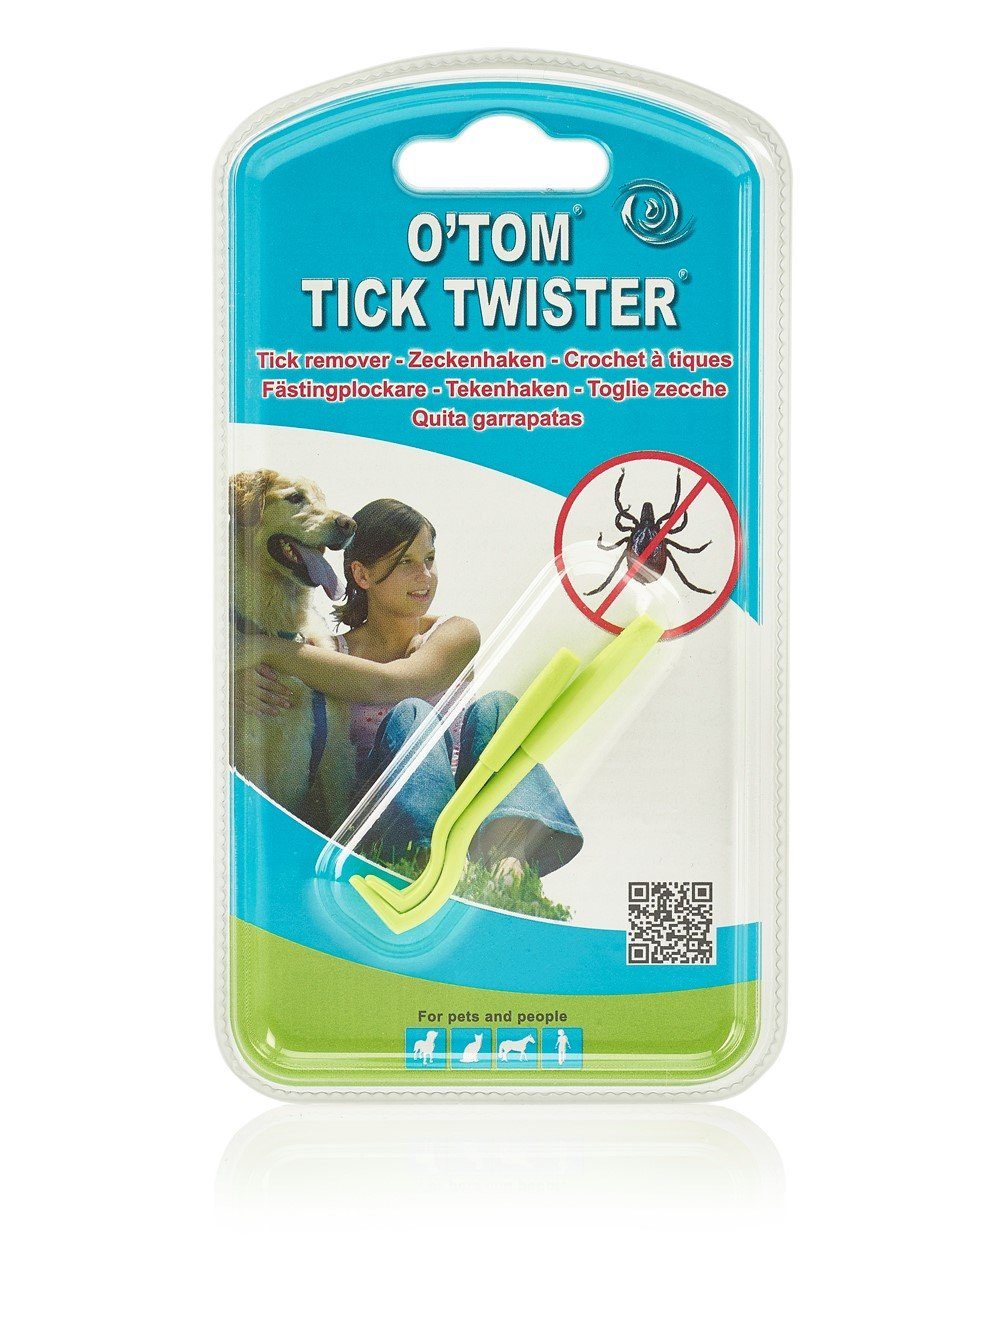 TickTwister Zeckenpinzette O'TOM/TICK grün Zeckenhaken TWISTER®